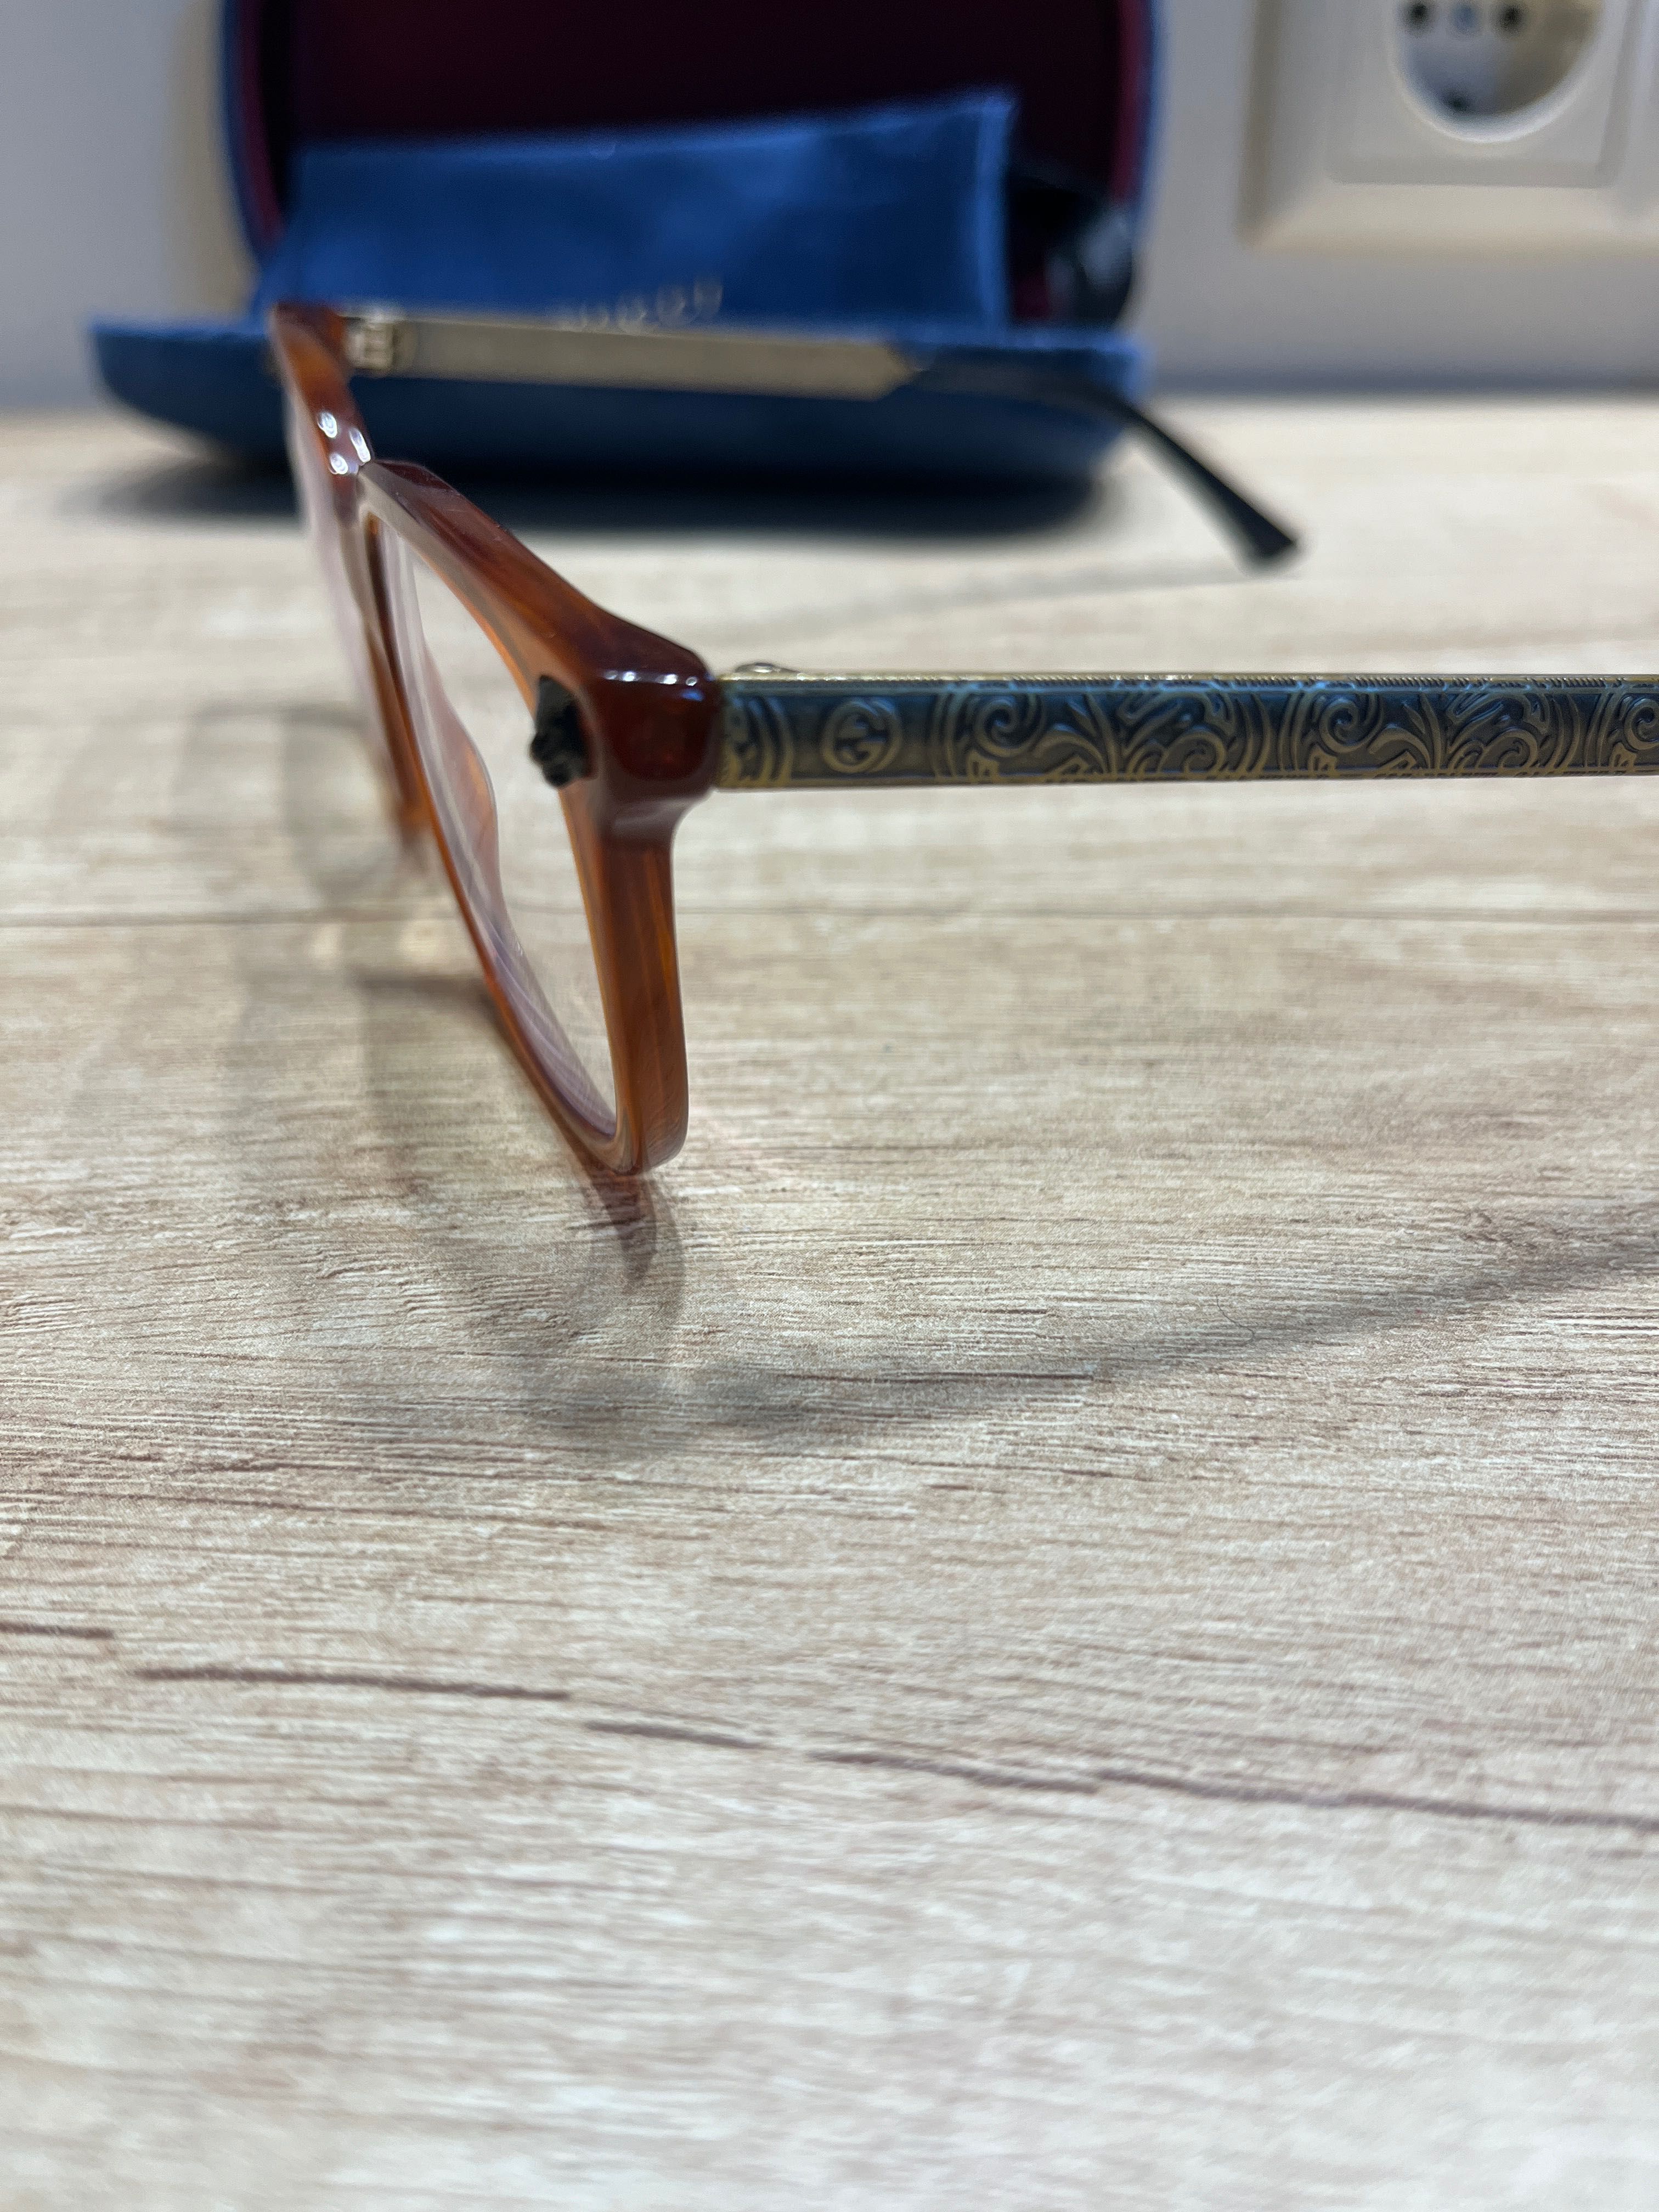 Gucci 100% автентични  диоптрични очила/ рамки , безупречни